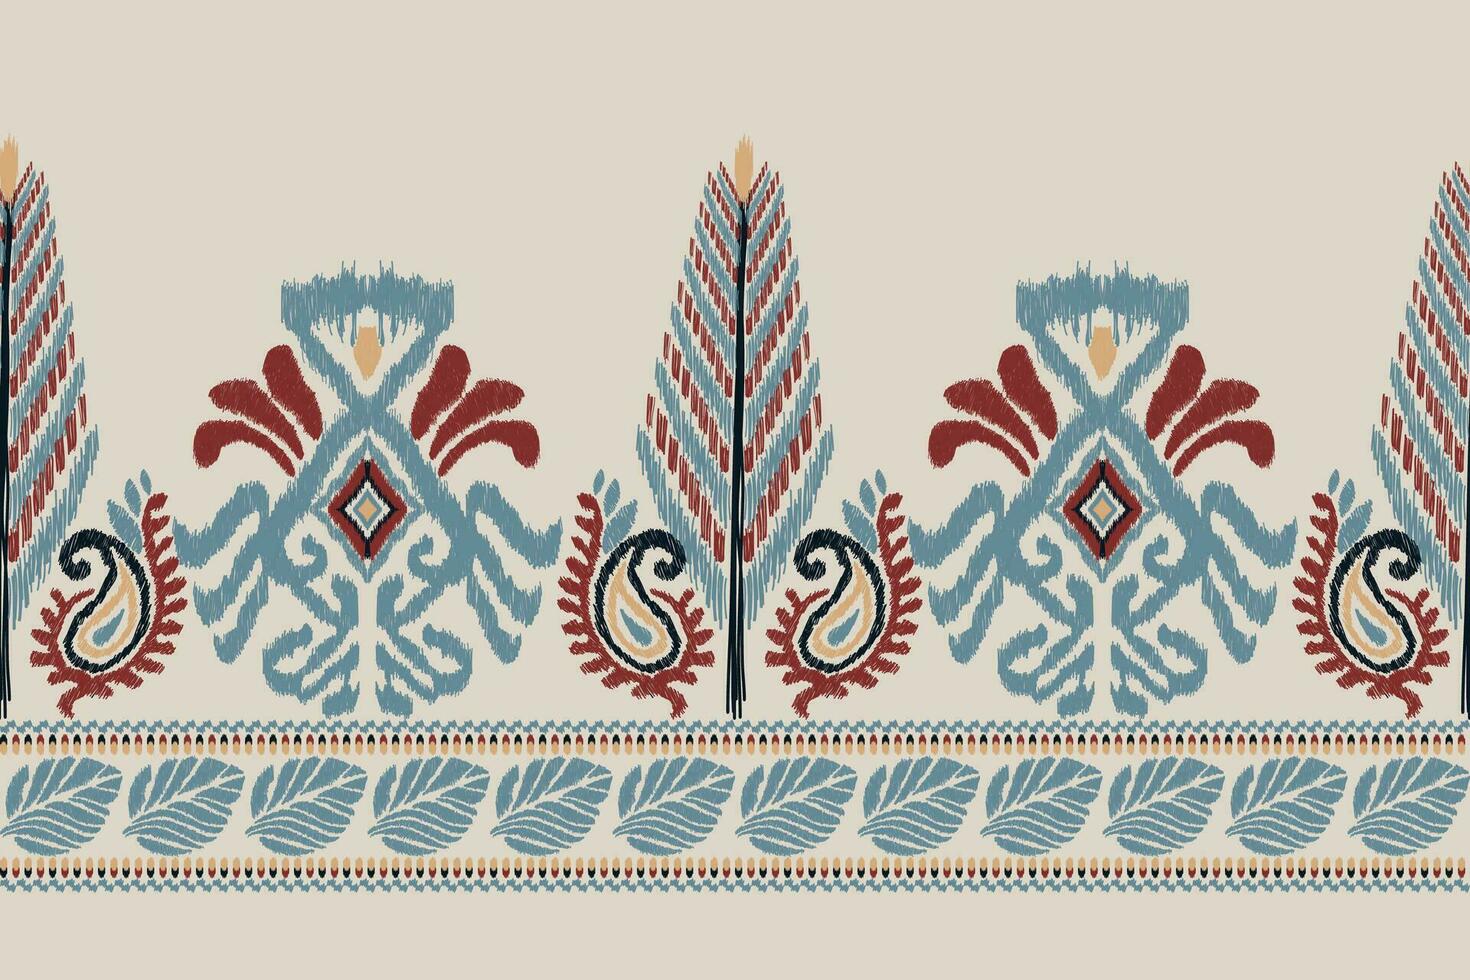 afrikansk ikat blommig paisley broderi på grå bakgrund.ikat etnisk orientalisk mönster traditionell.aztec stil abstrakt vektor illustration.design för textur, tyg, kläder, inslagning, dekoration, halsduk